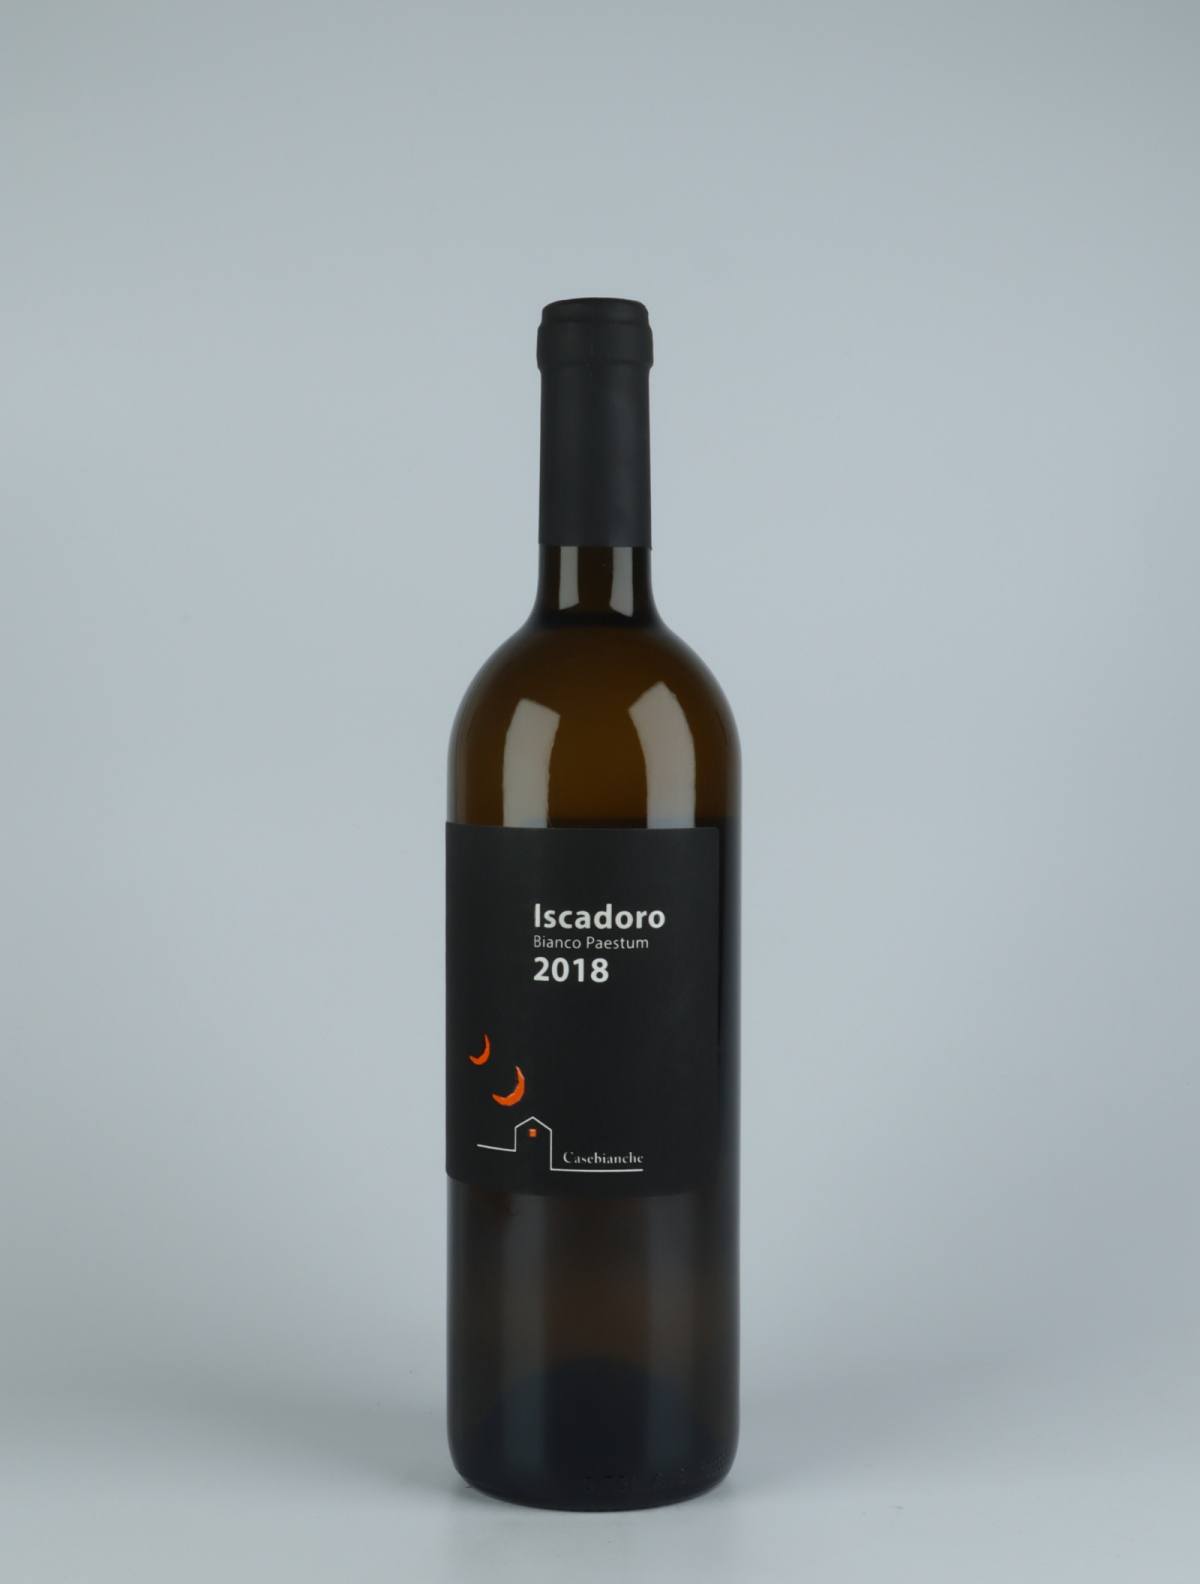 En flaske 2018 Iscadoro Orange vin fra Casebianche, Campanien i Italien